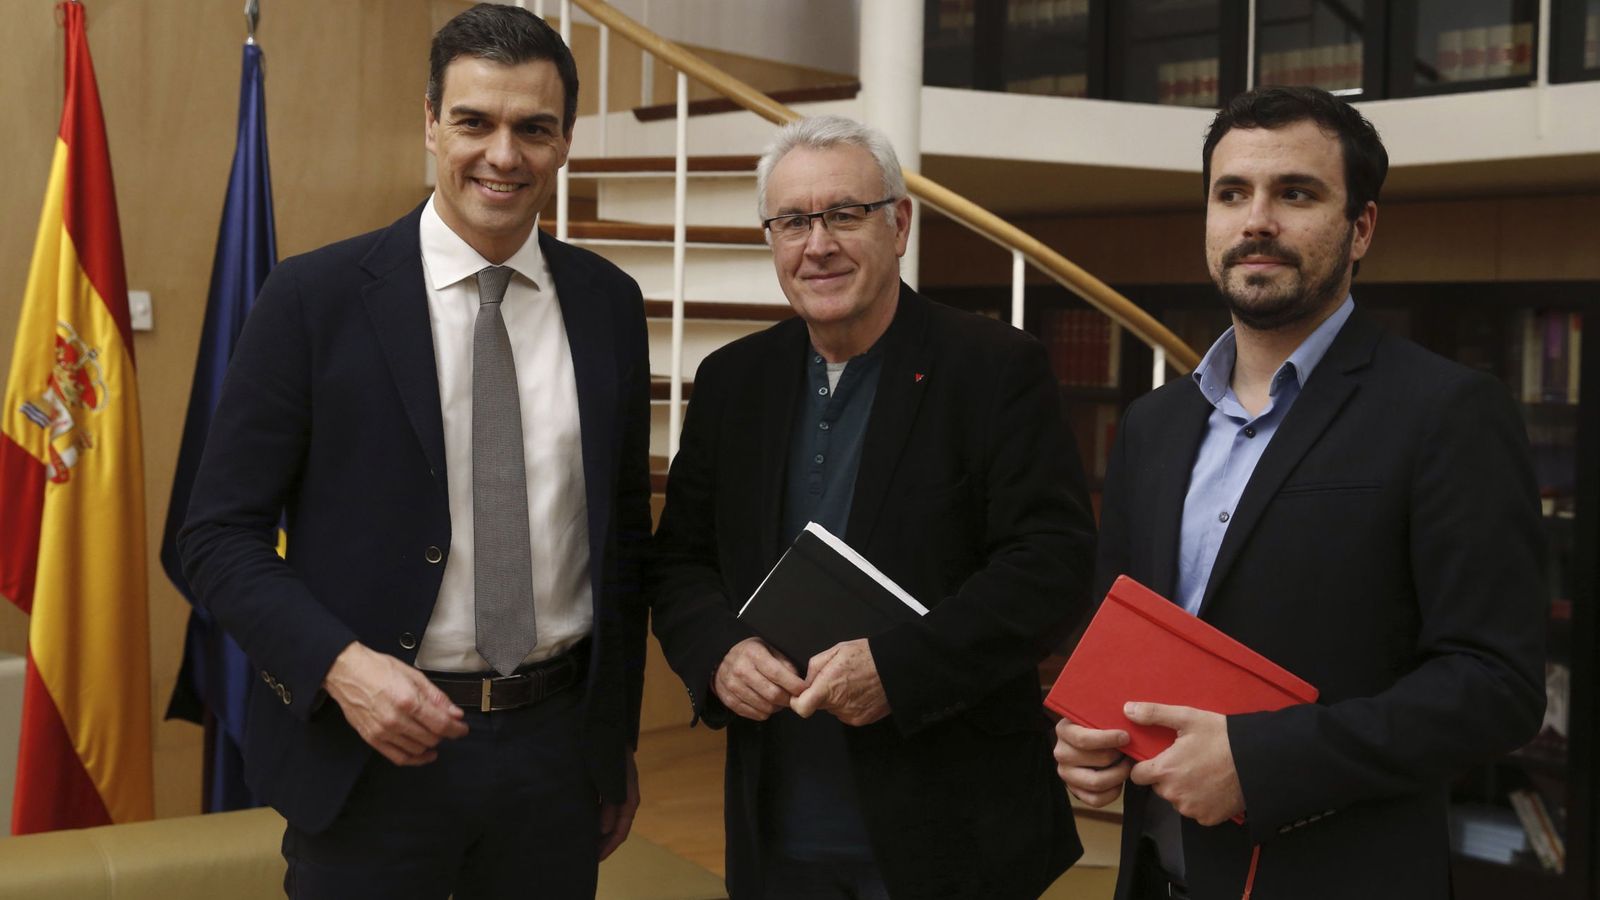 Foto: El secretario general del PSOE, Pedro Sánchez, junto a Alberto Garzón y Cayo Lara. (Efe)